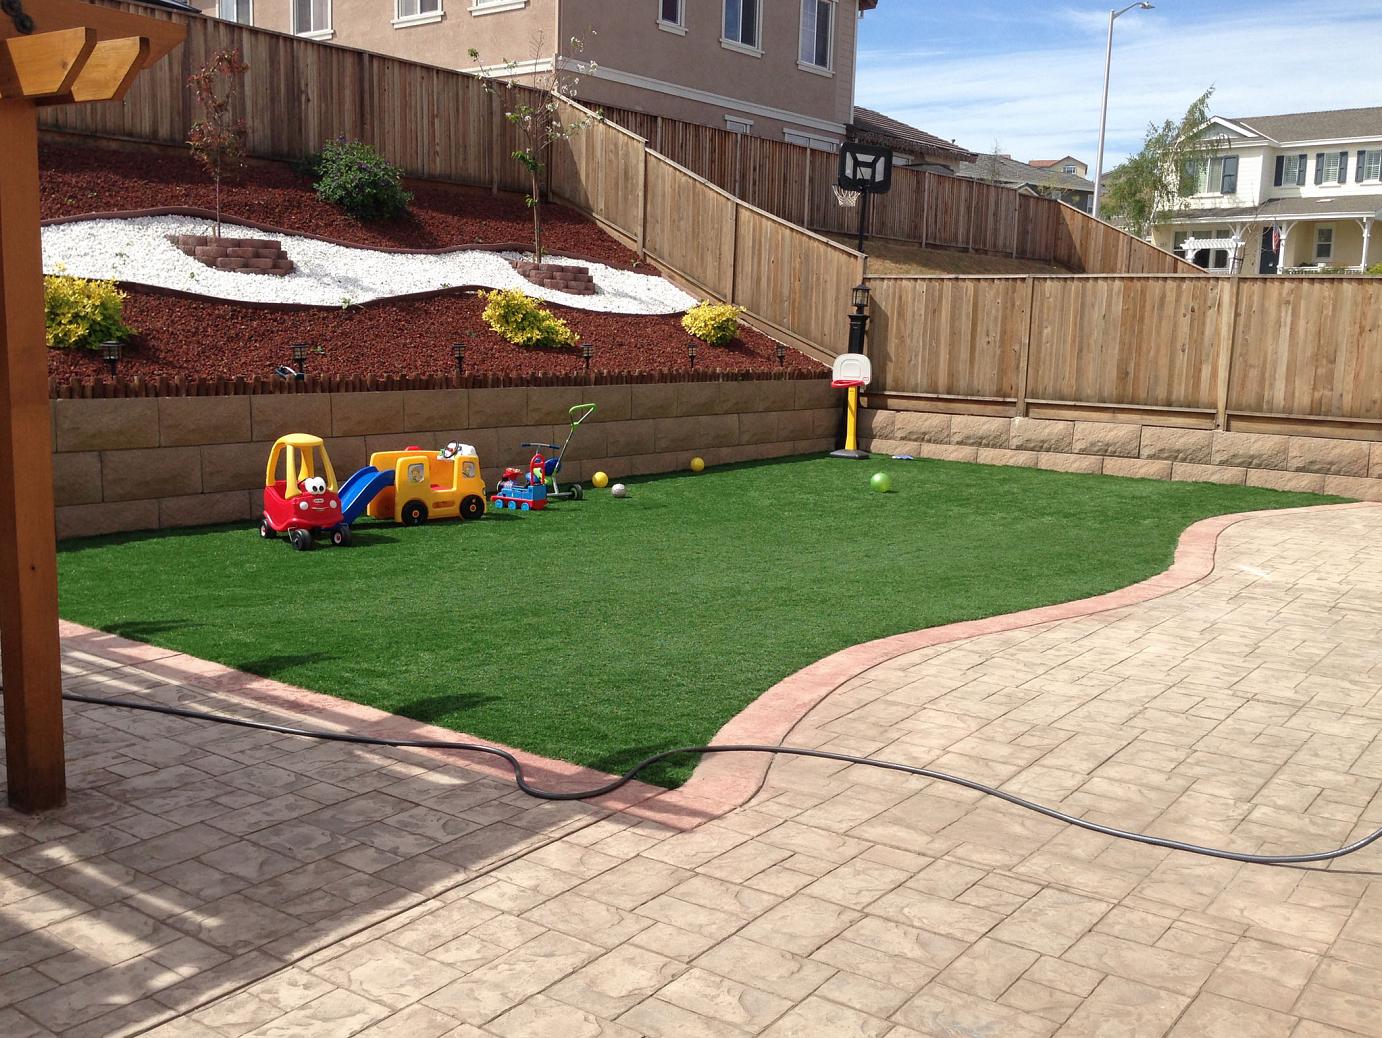 Artificial Grass: Installing Artificial Grass Creedmoor, Texas Playground Safety, Backyard Garden Ideas